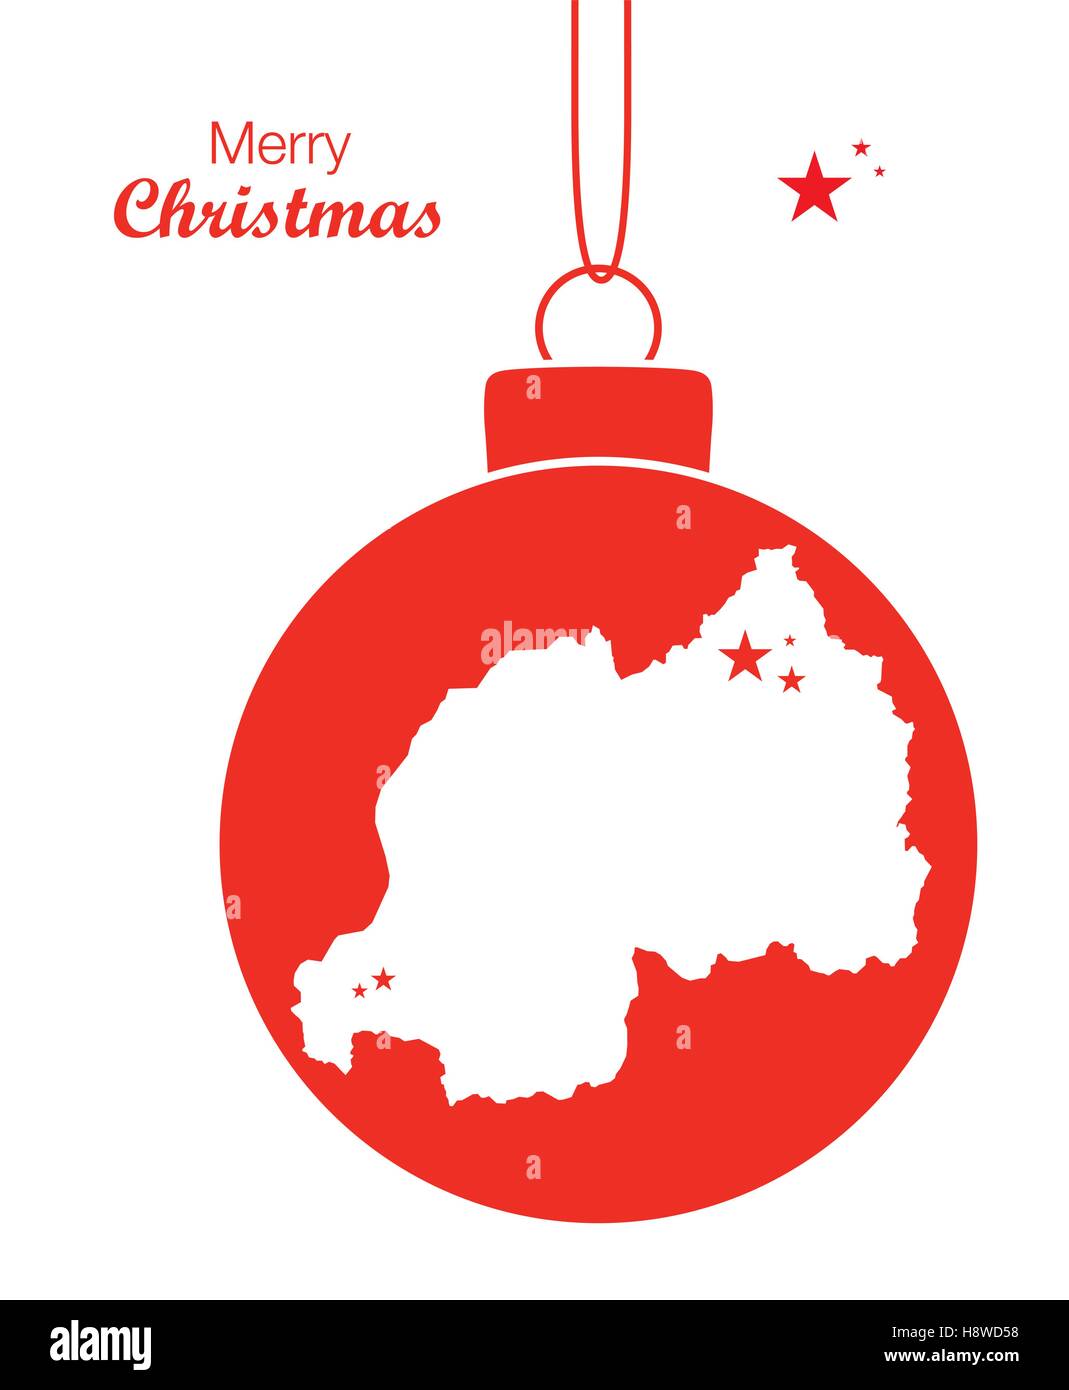 Joyeux Noël thème d'illustration avec la carte du Rwanda Illustration de Vecteur